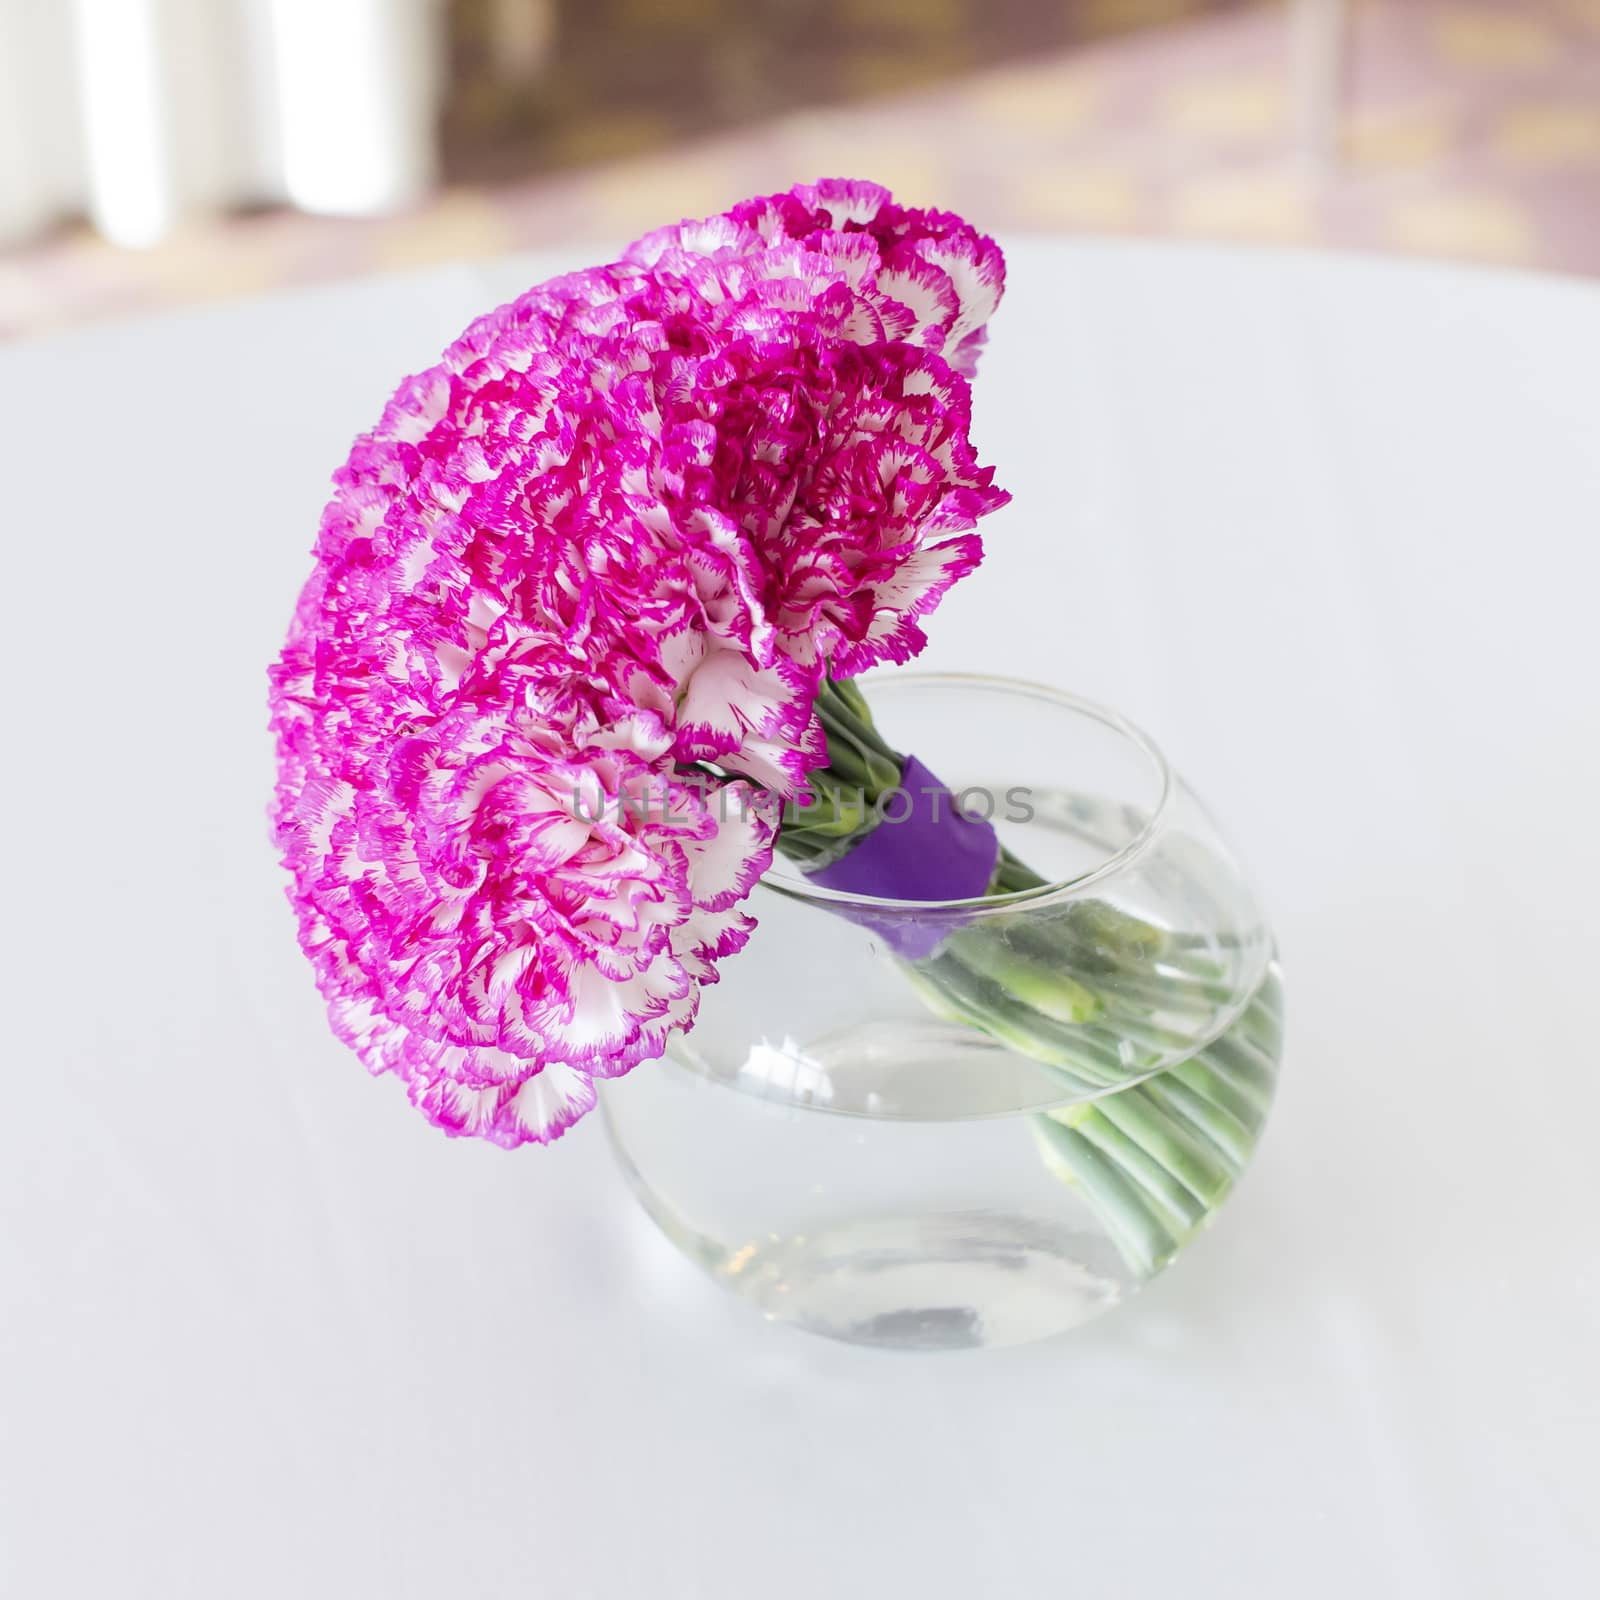 bouquet in vase by art9858